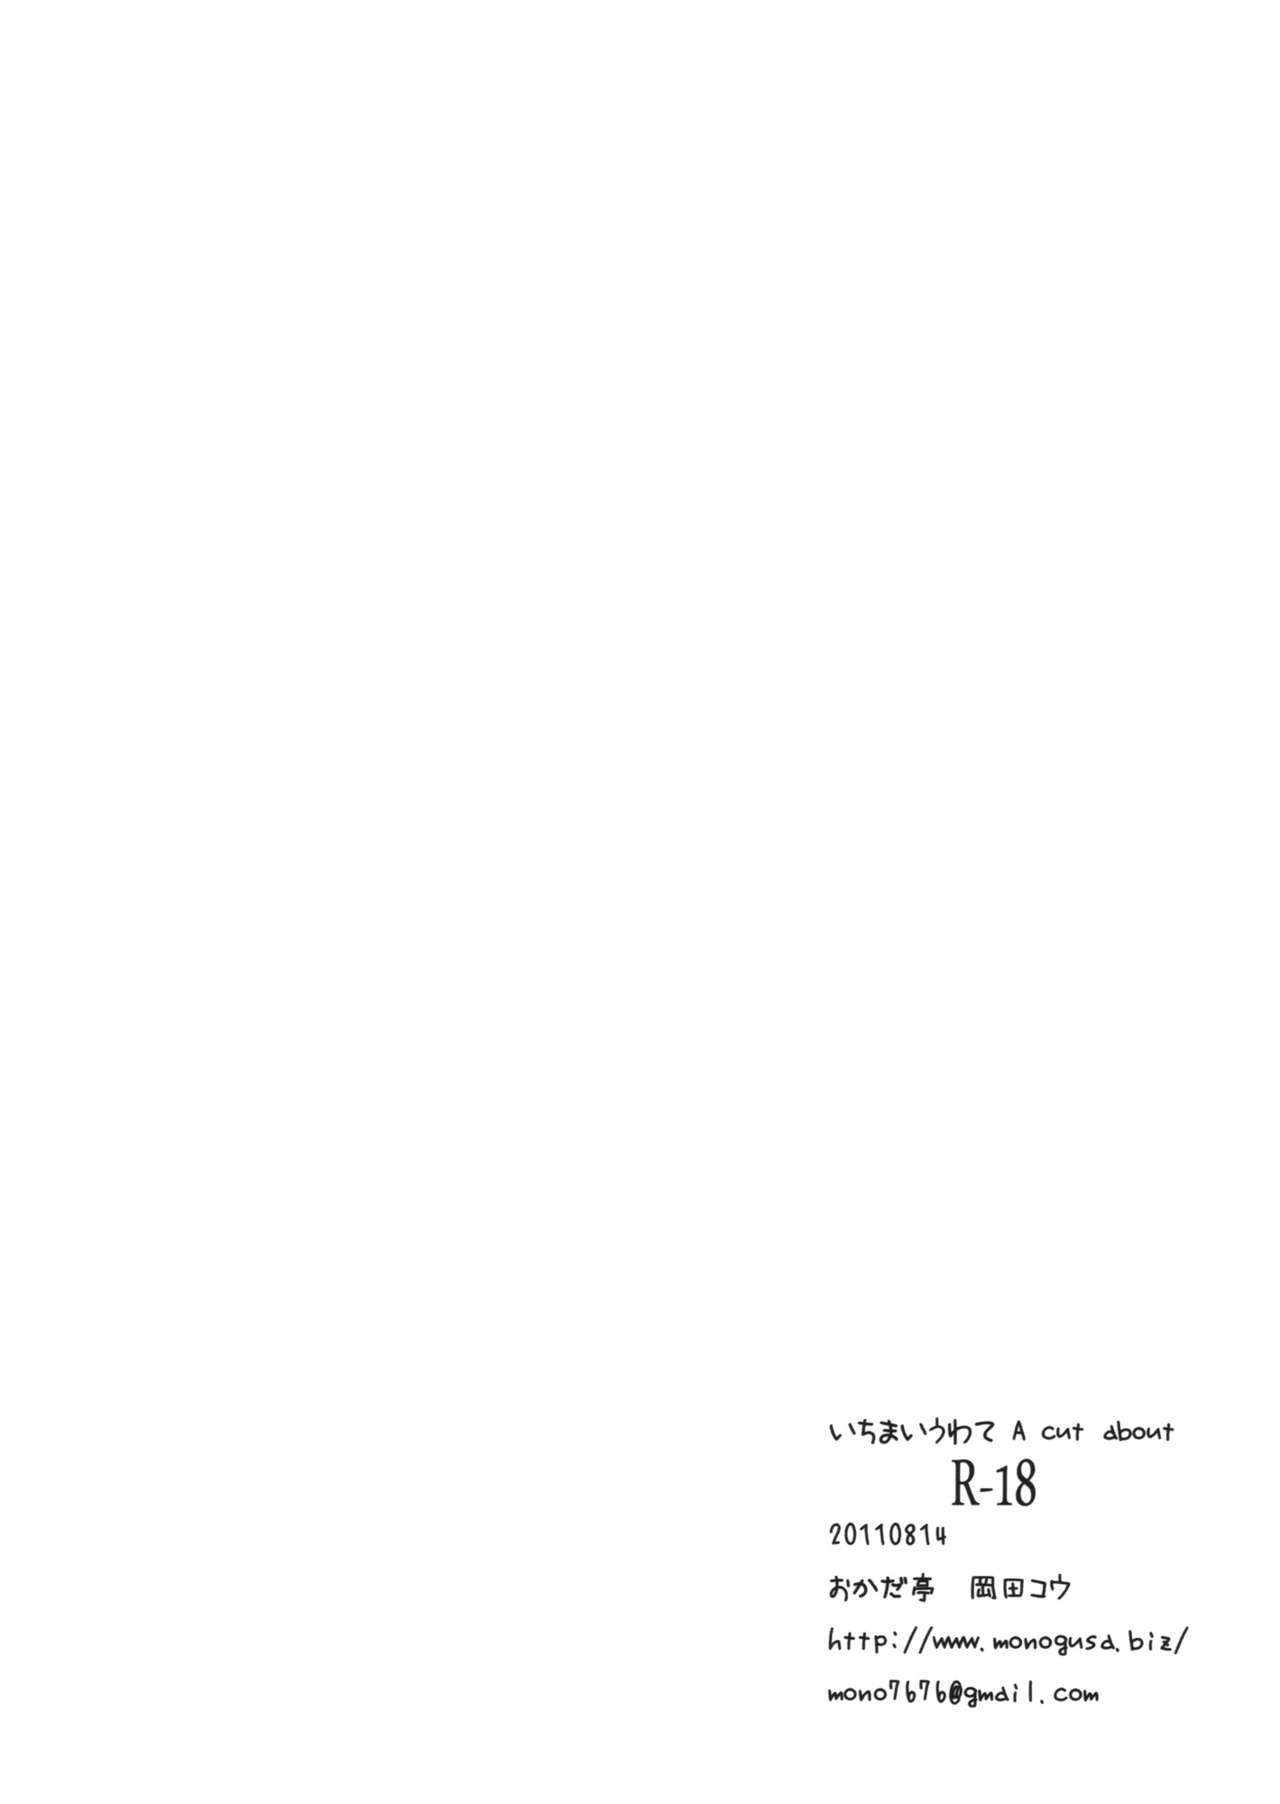 Ichimai Uwate - A cut about +Paper 29